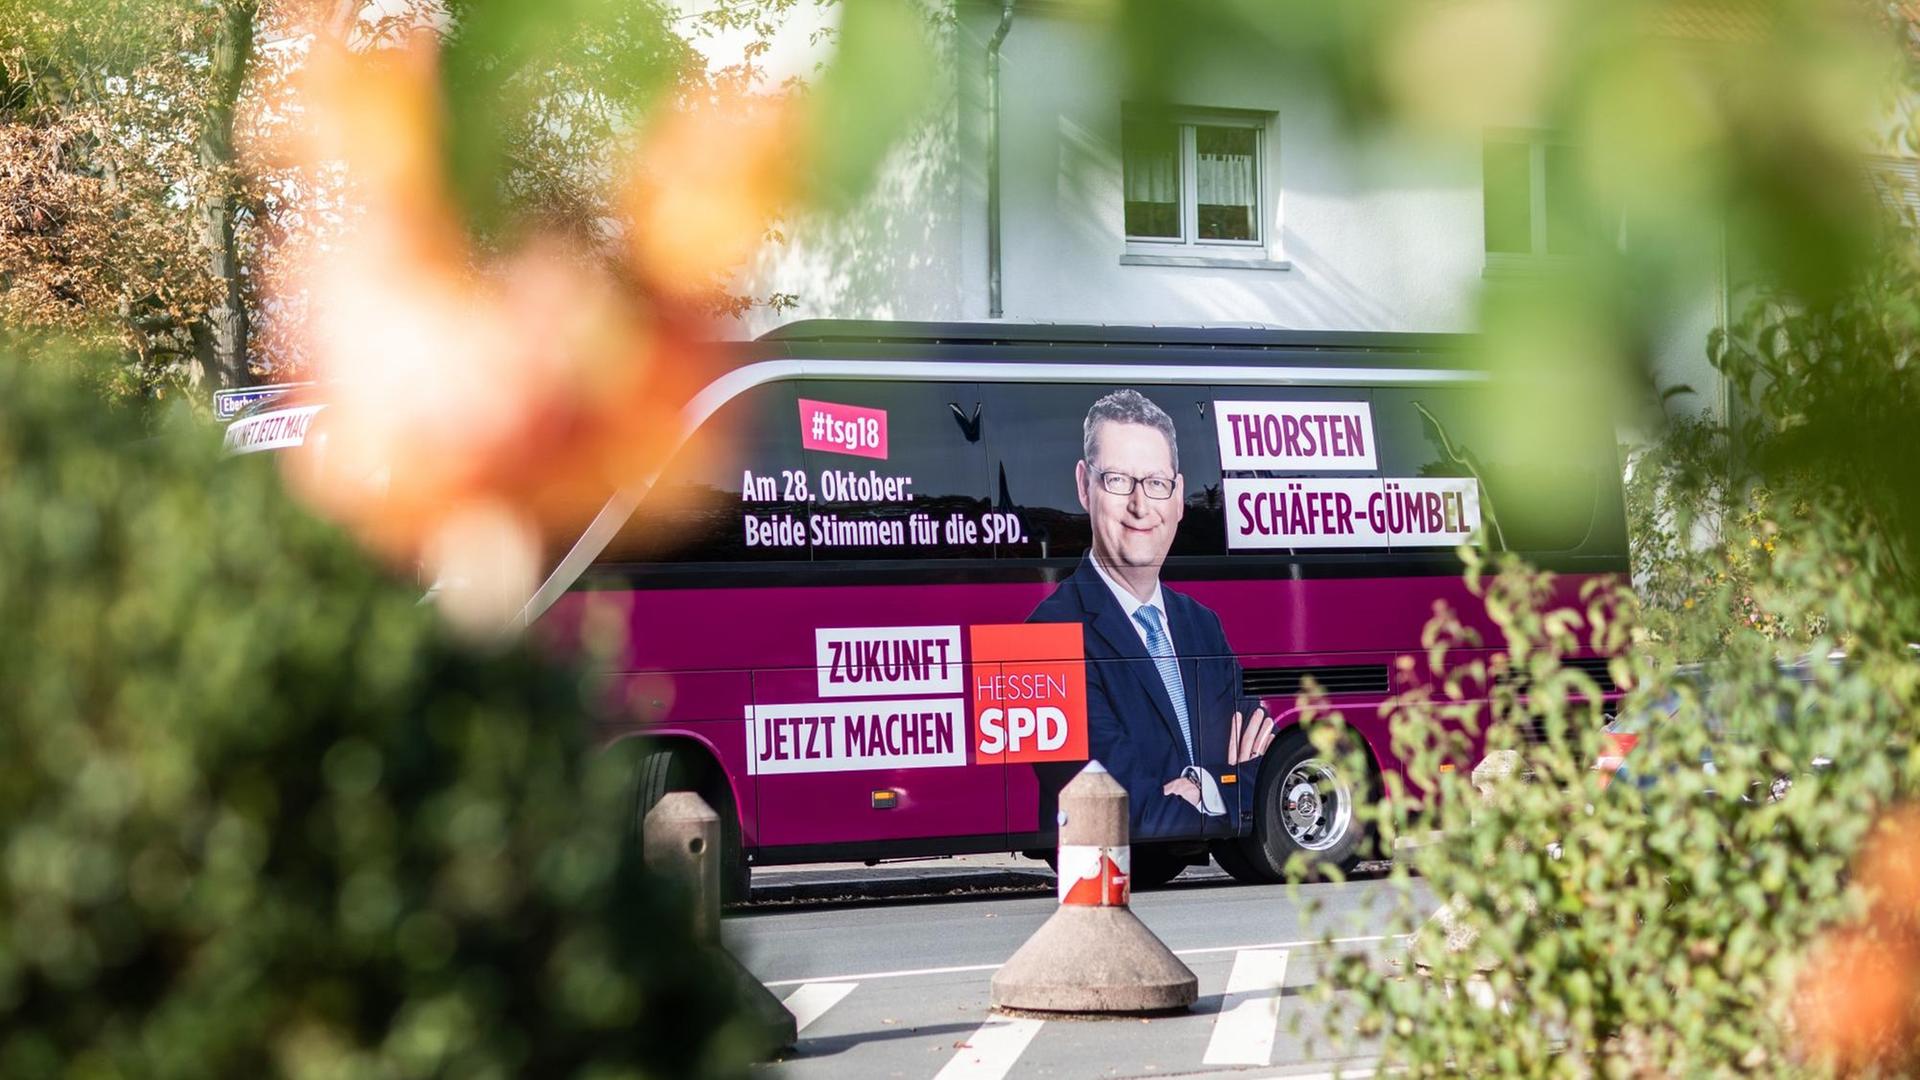 Im Vordergrund verschwommene Büsche, im Hintergrund der Wahlkampfbus von Thorsten Schäfer-Gümbel.